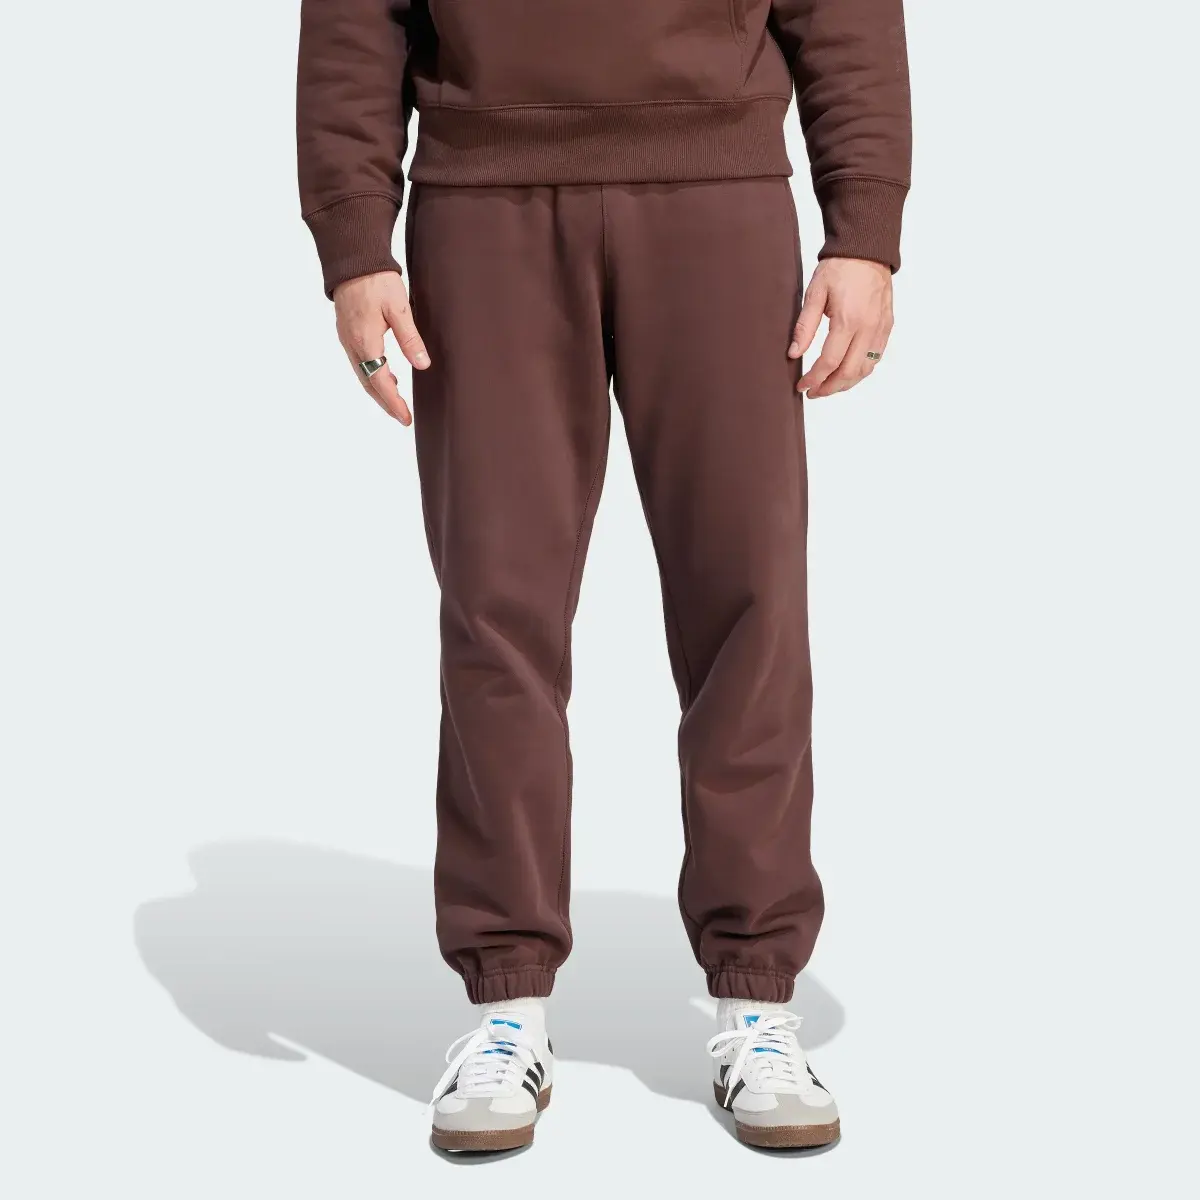 Adidas Sweat Pants Premium Essentials. 1